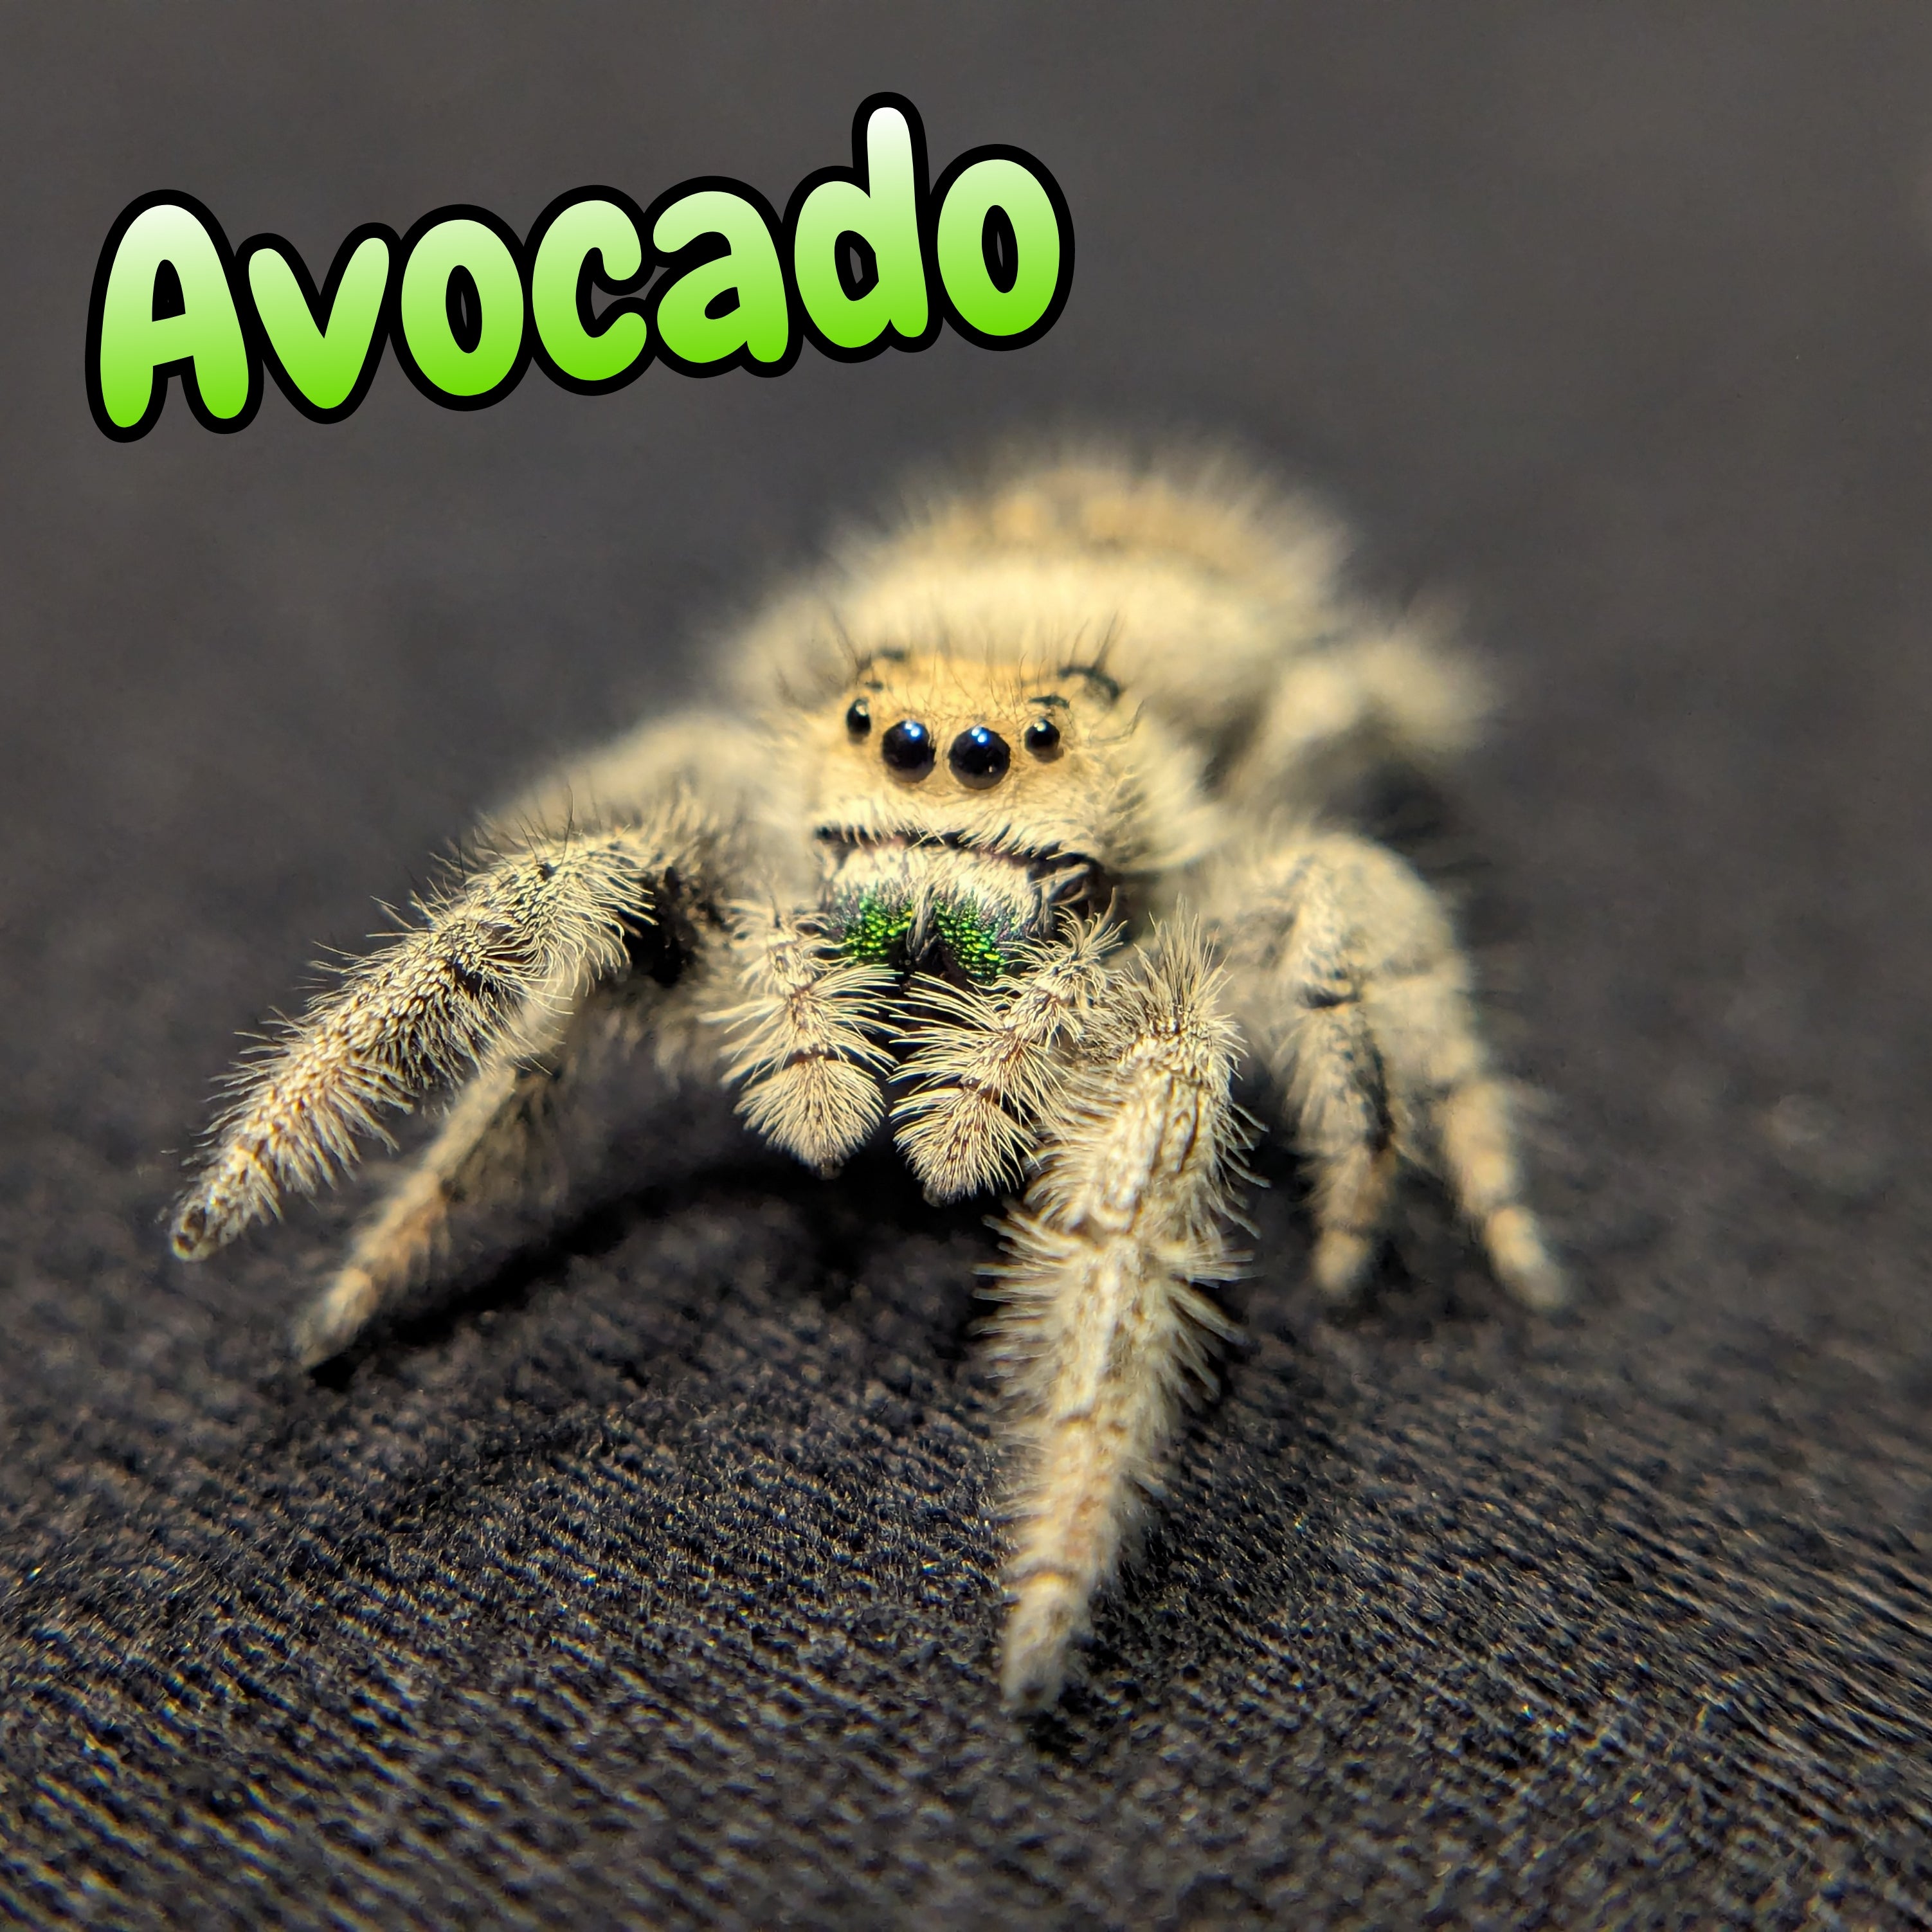 Regal Jumping Spider "Avocado"